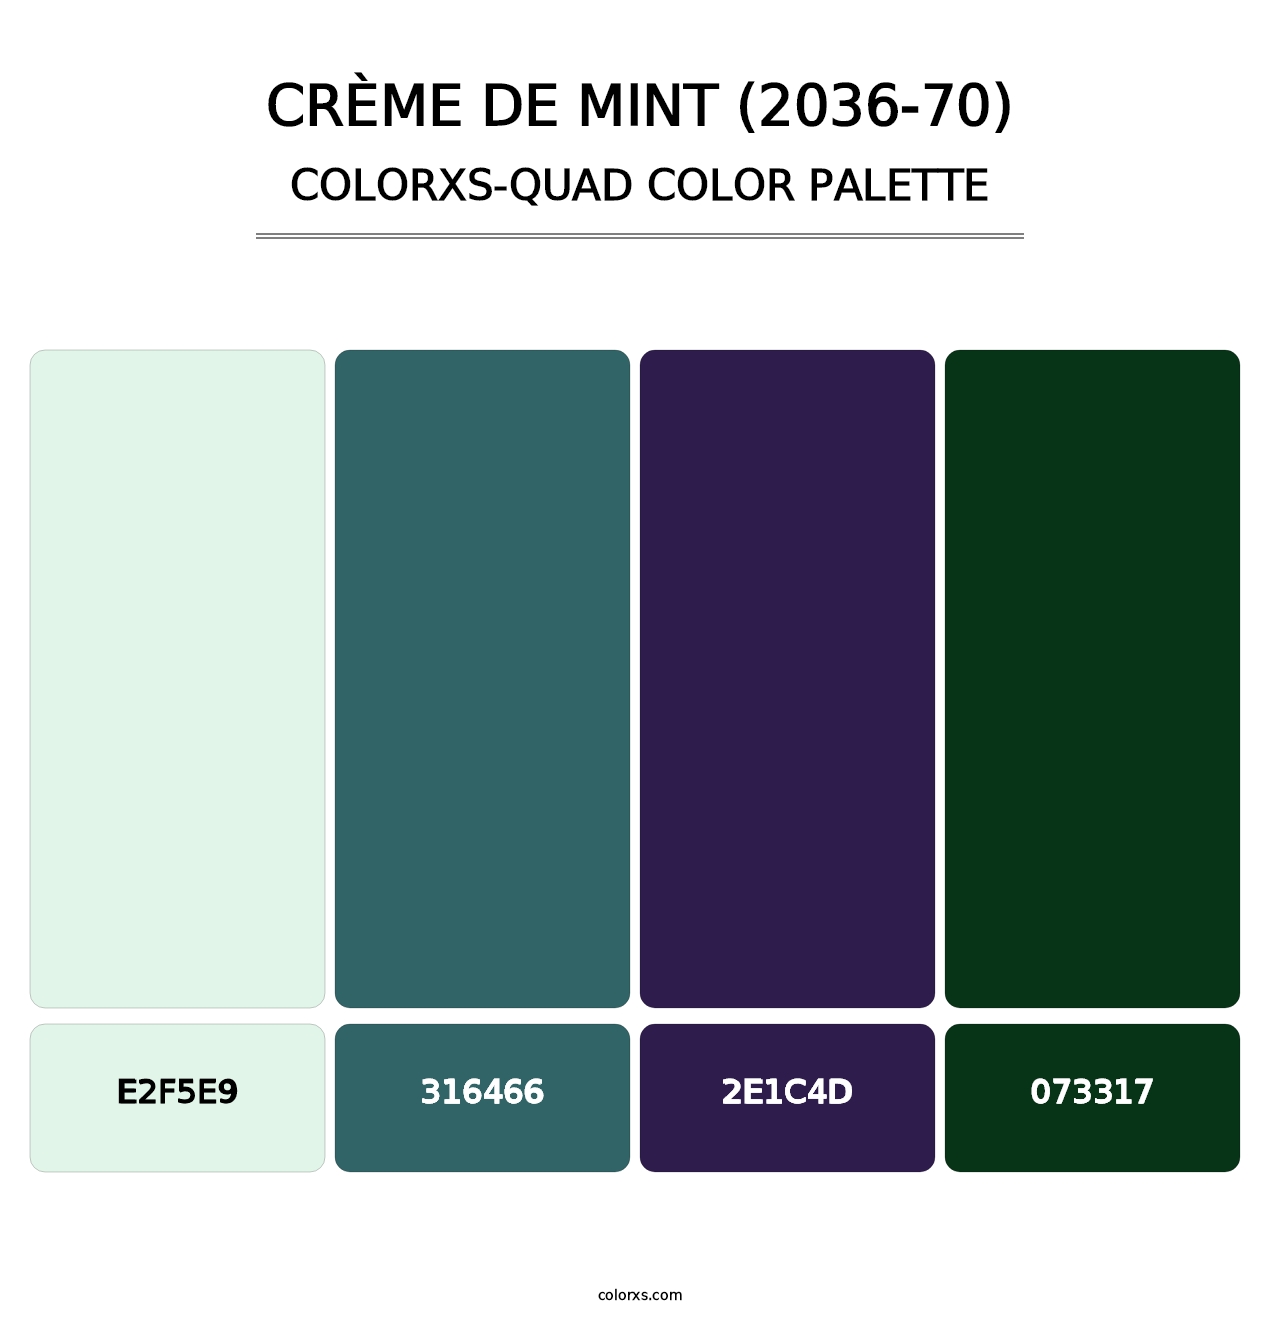 Crème de Mint (2036-70) - Colorxs Quad Palette